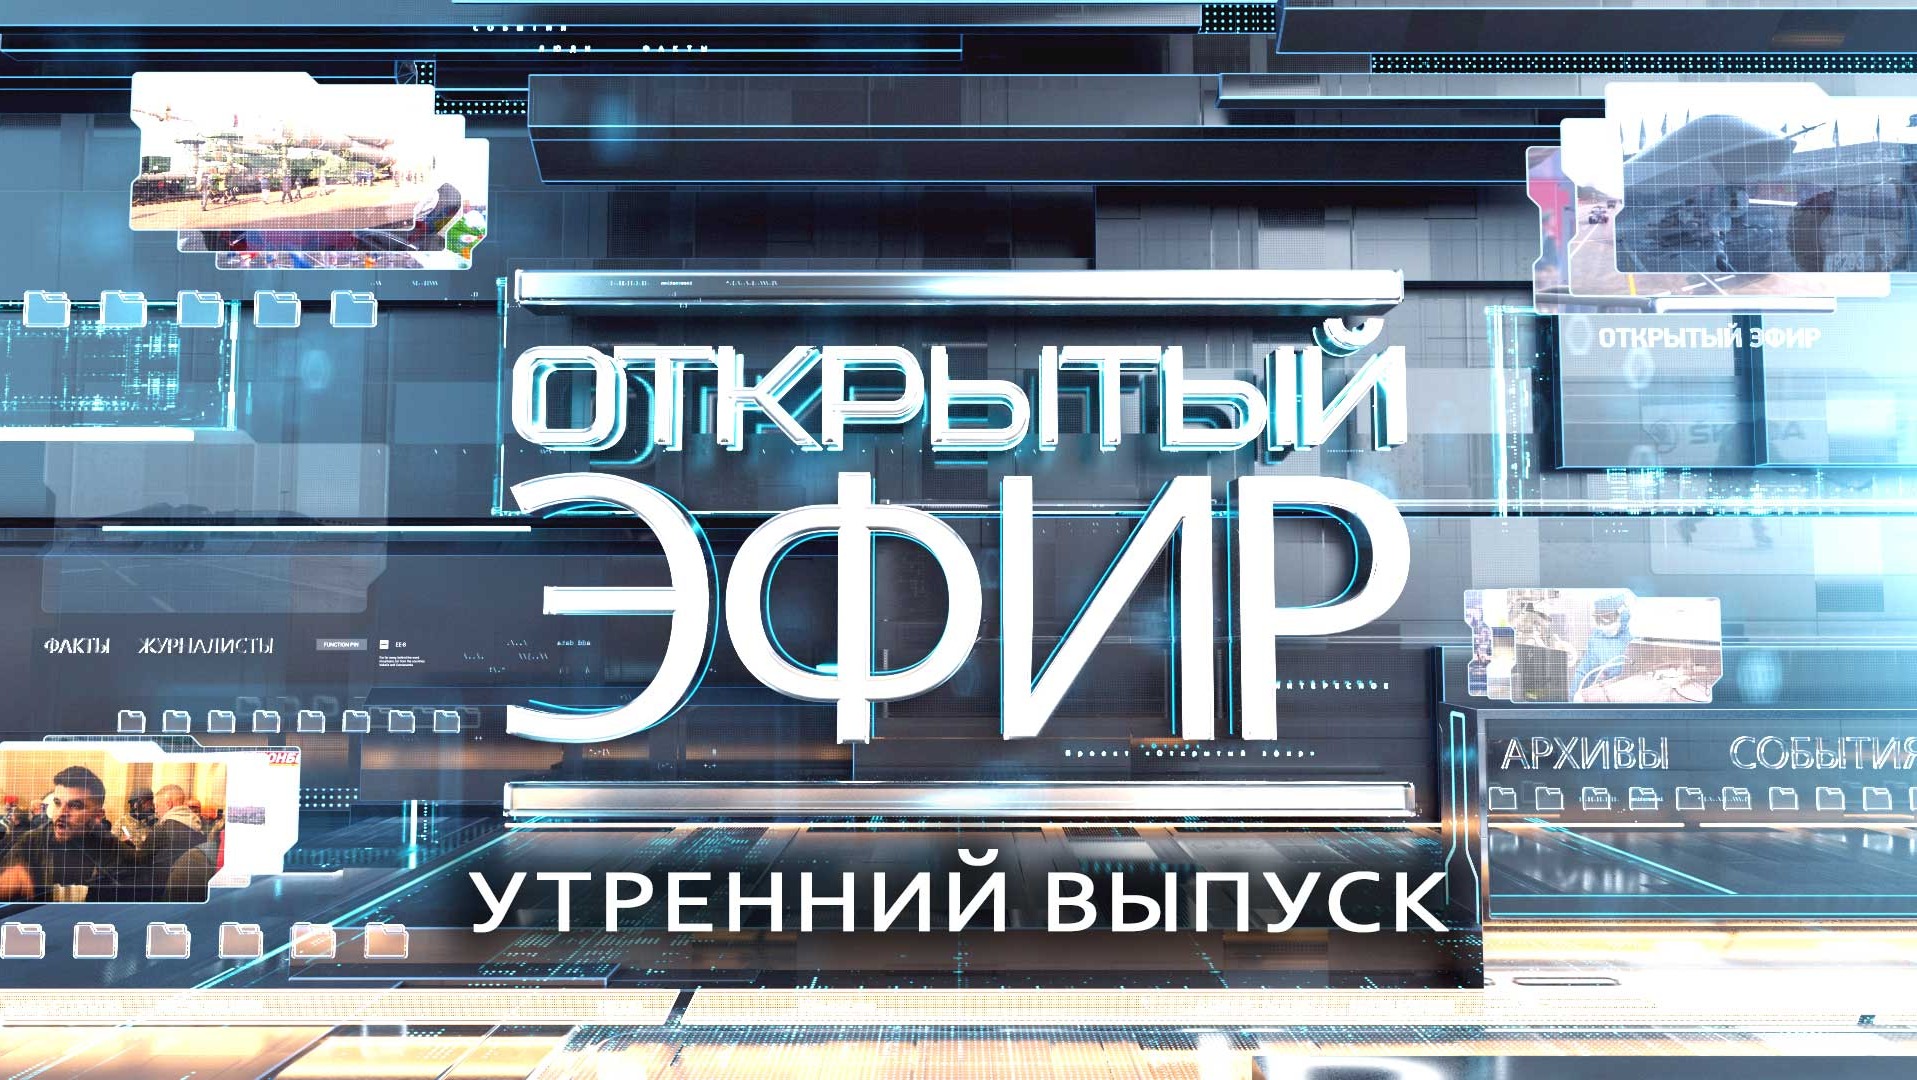 "Открытый эфир" о специальной военной операции в Донбассе. День 481